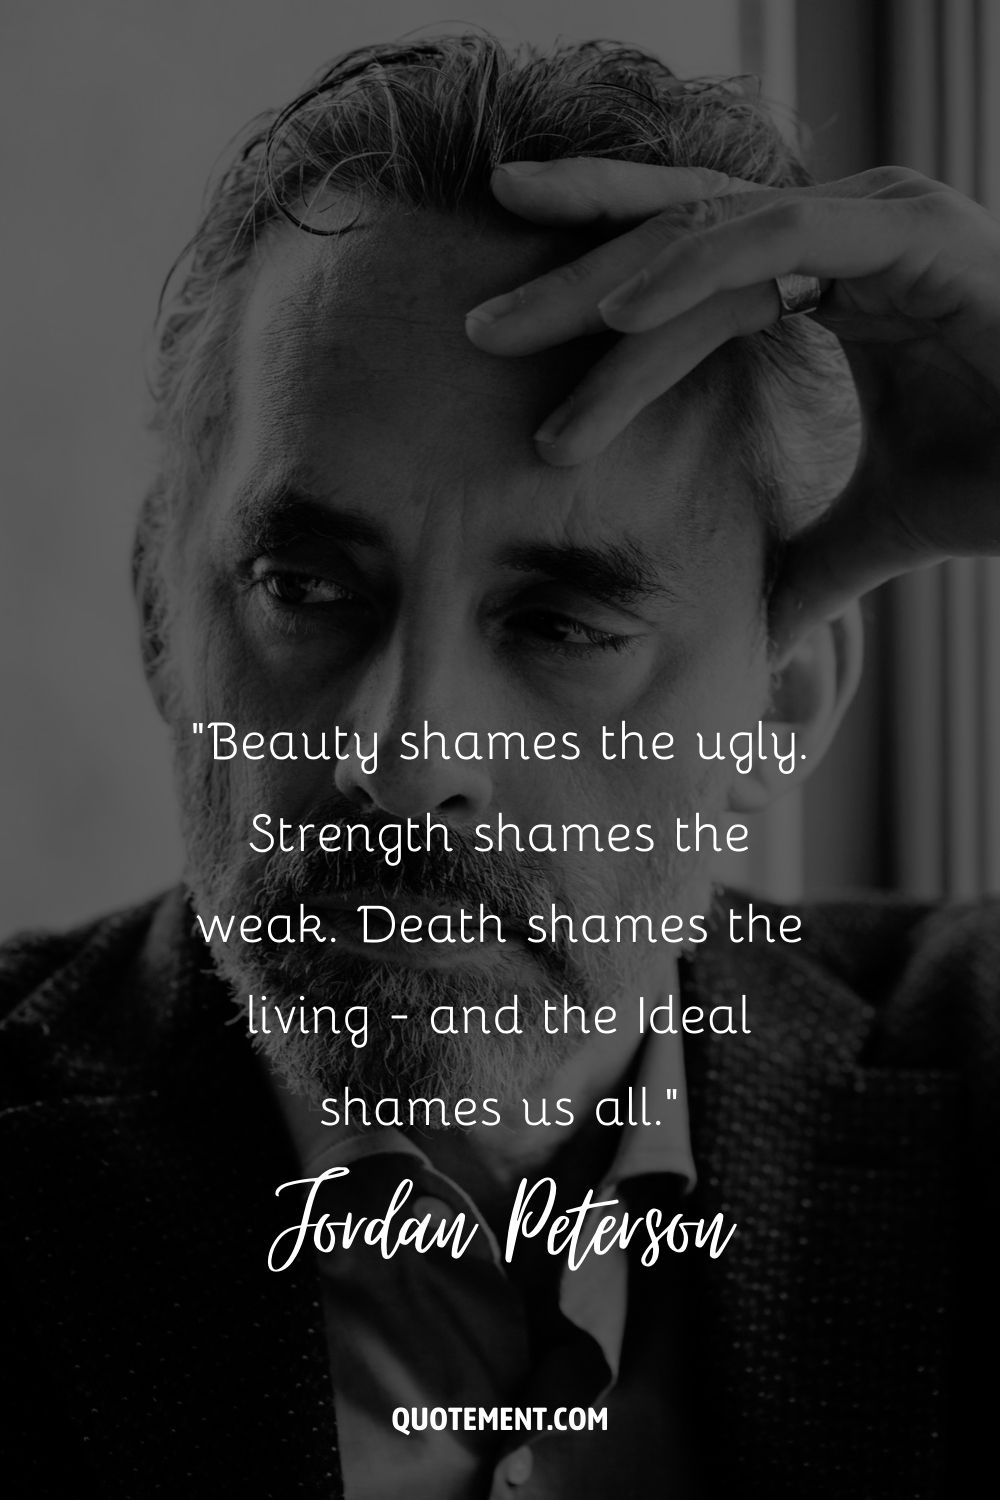 La belleza avergüenza a los feos. La fuerza avergüenza a los débiles. La muerte avergüenza a los vivos, y el Ideal nos avergüenza a todos.